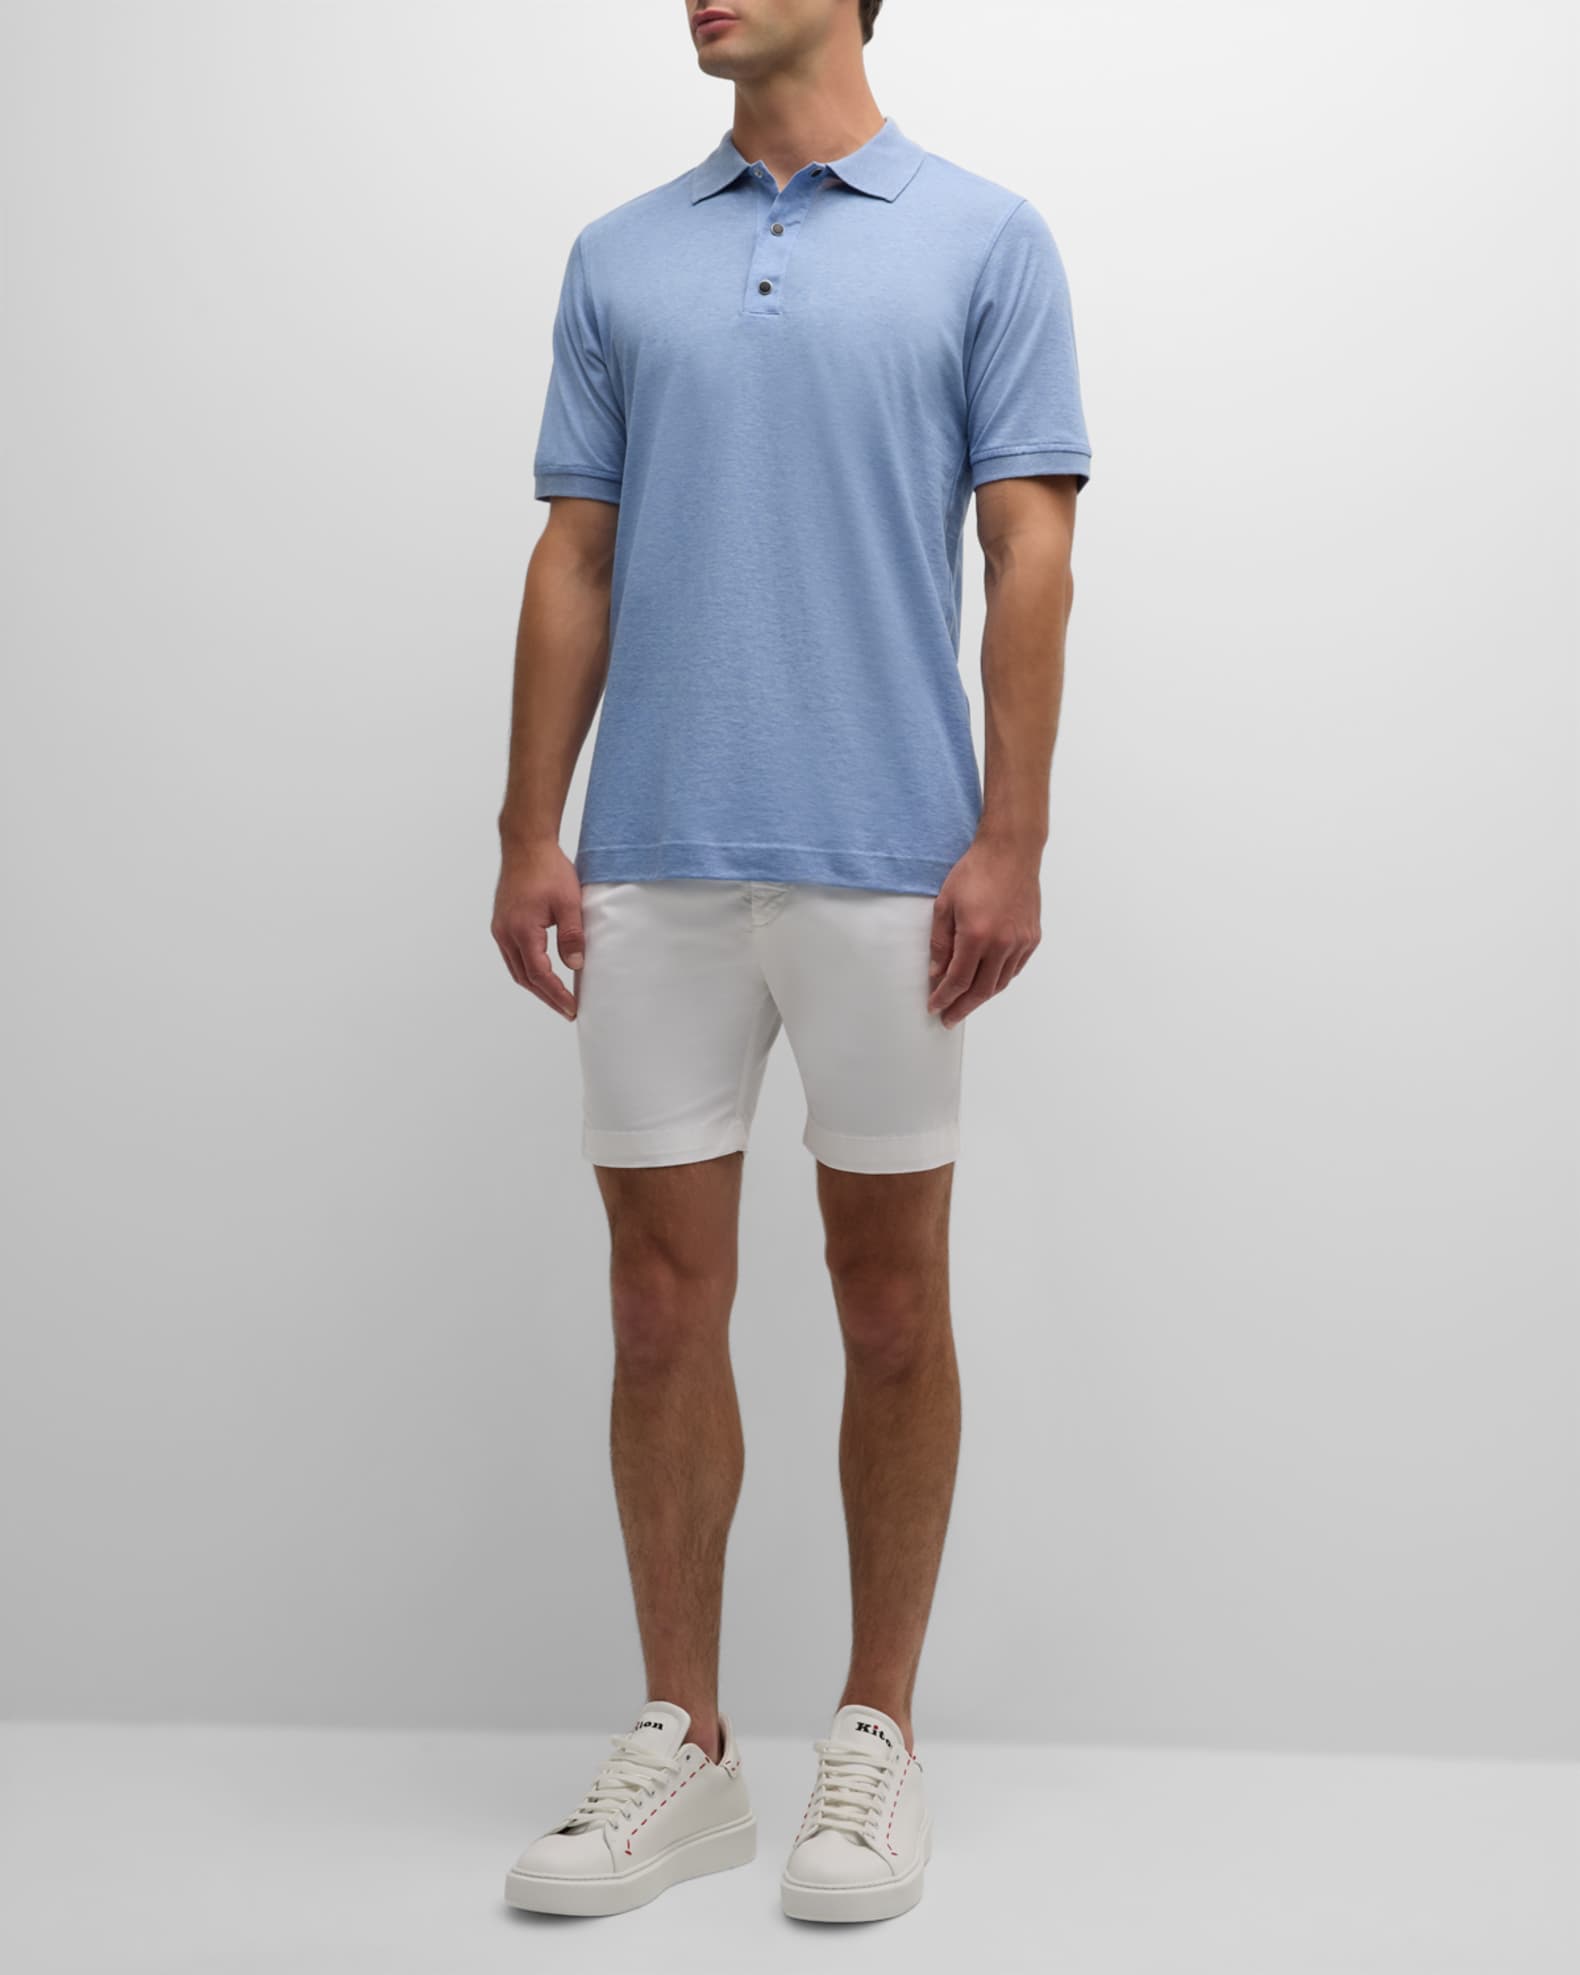 Kiton Men's Heathered Cotton Polo Shirt | Neiman Marcus